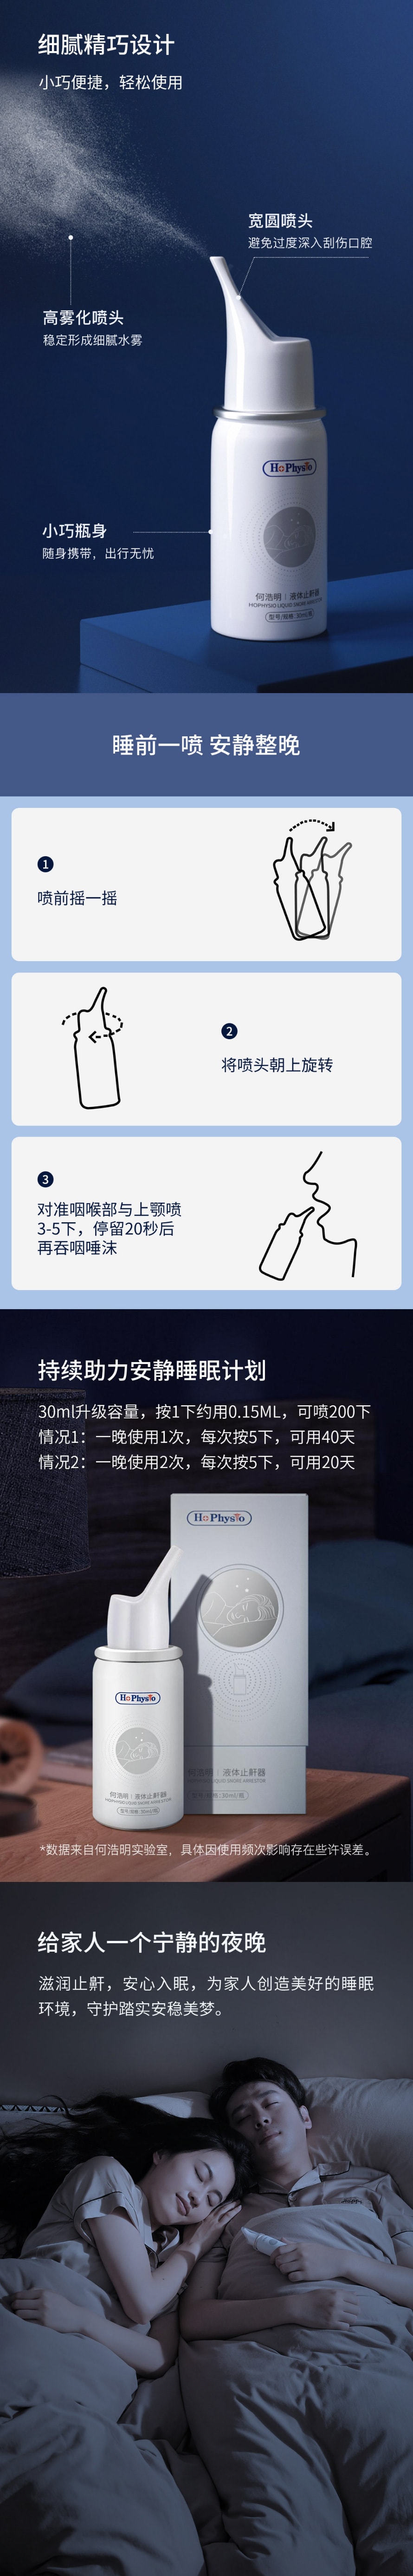 【中国直邮】小米有品 何浩明液体止鼾器 一盒装(30ml/瓶)